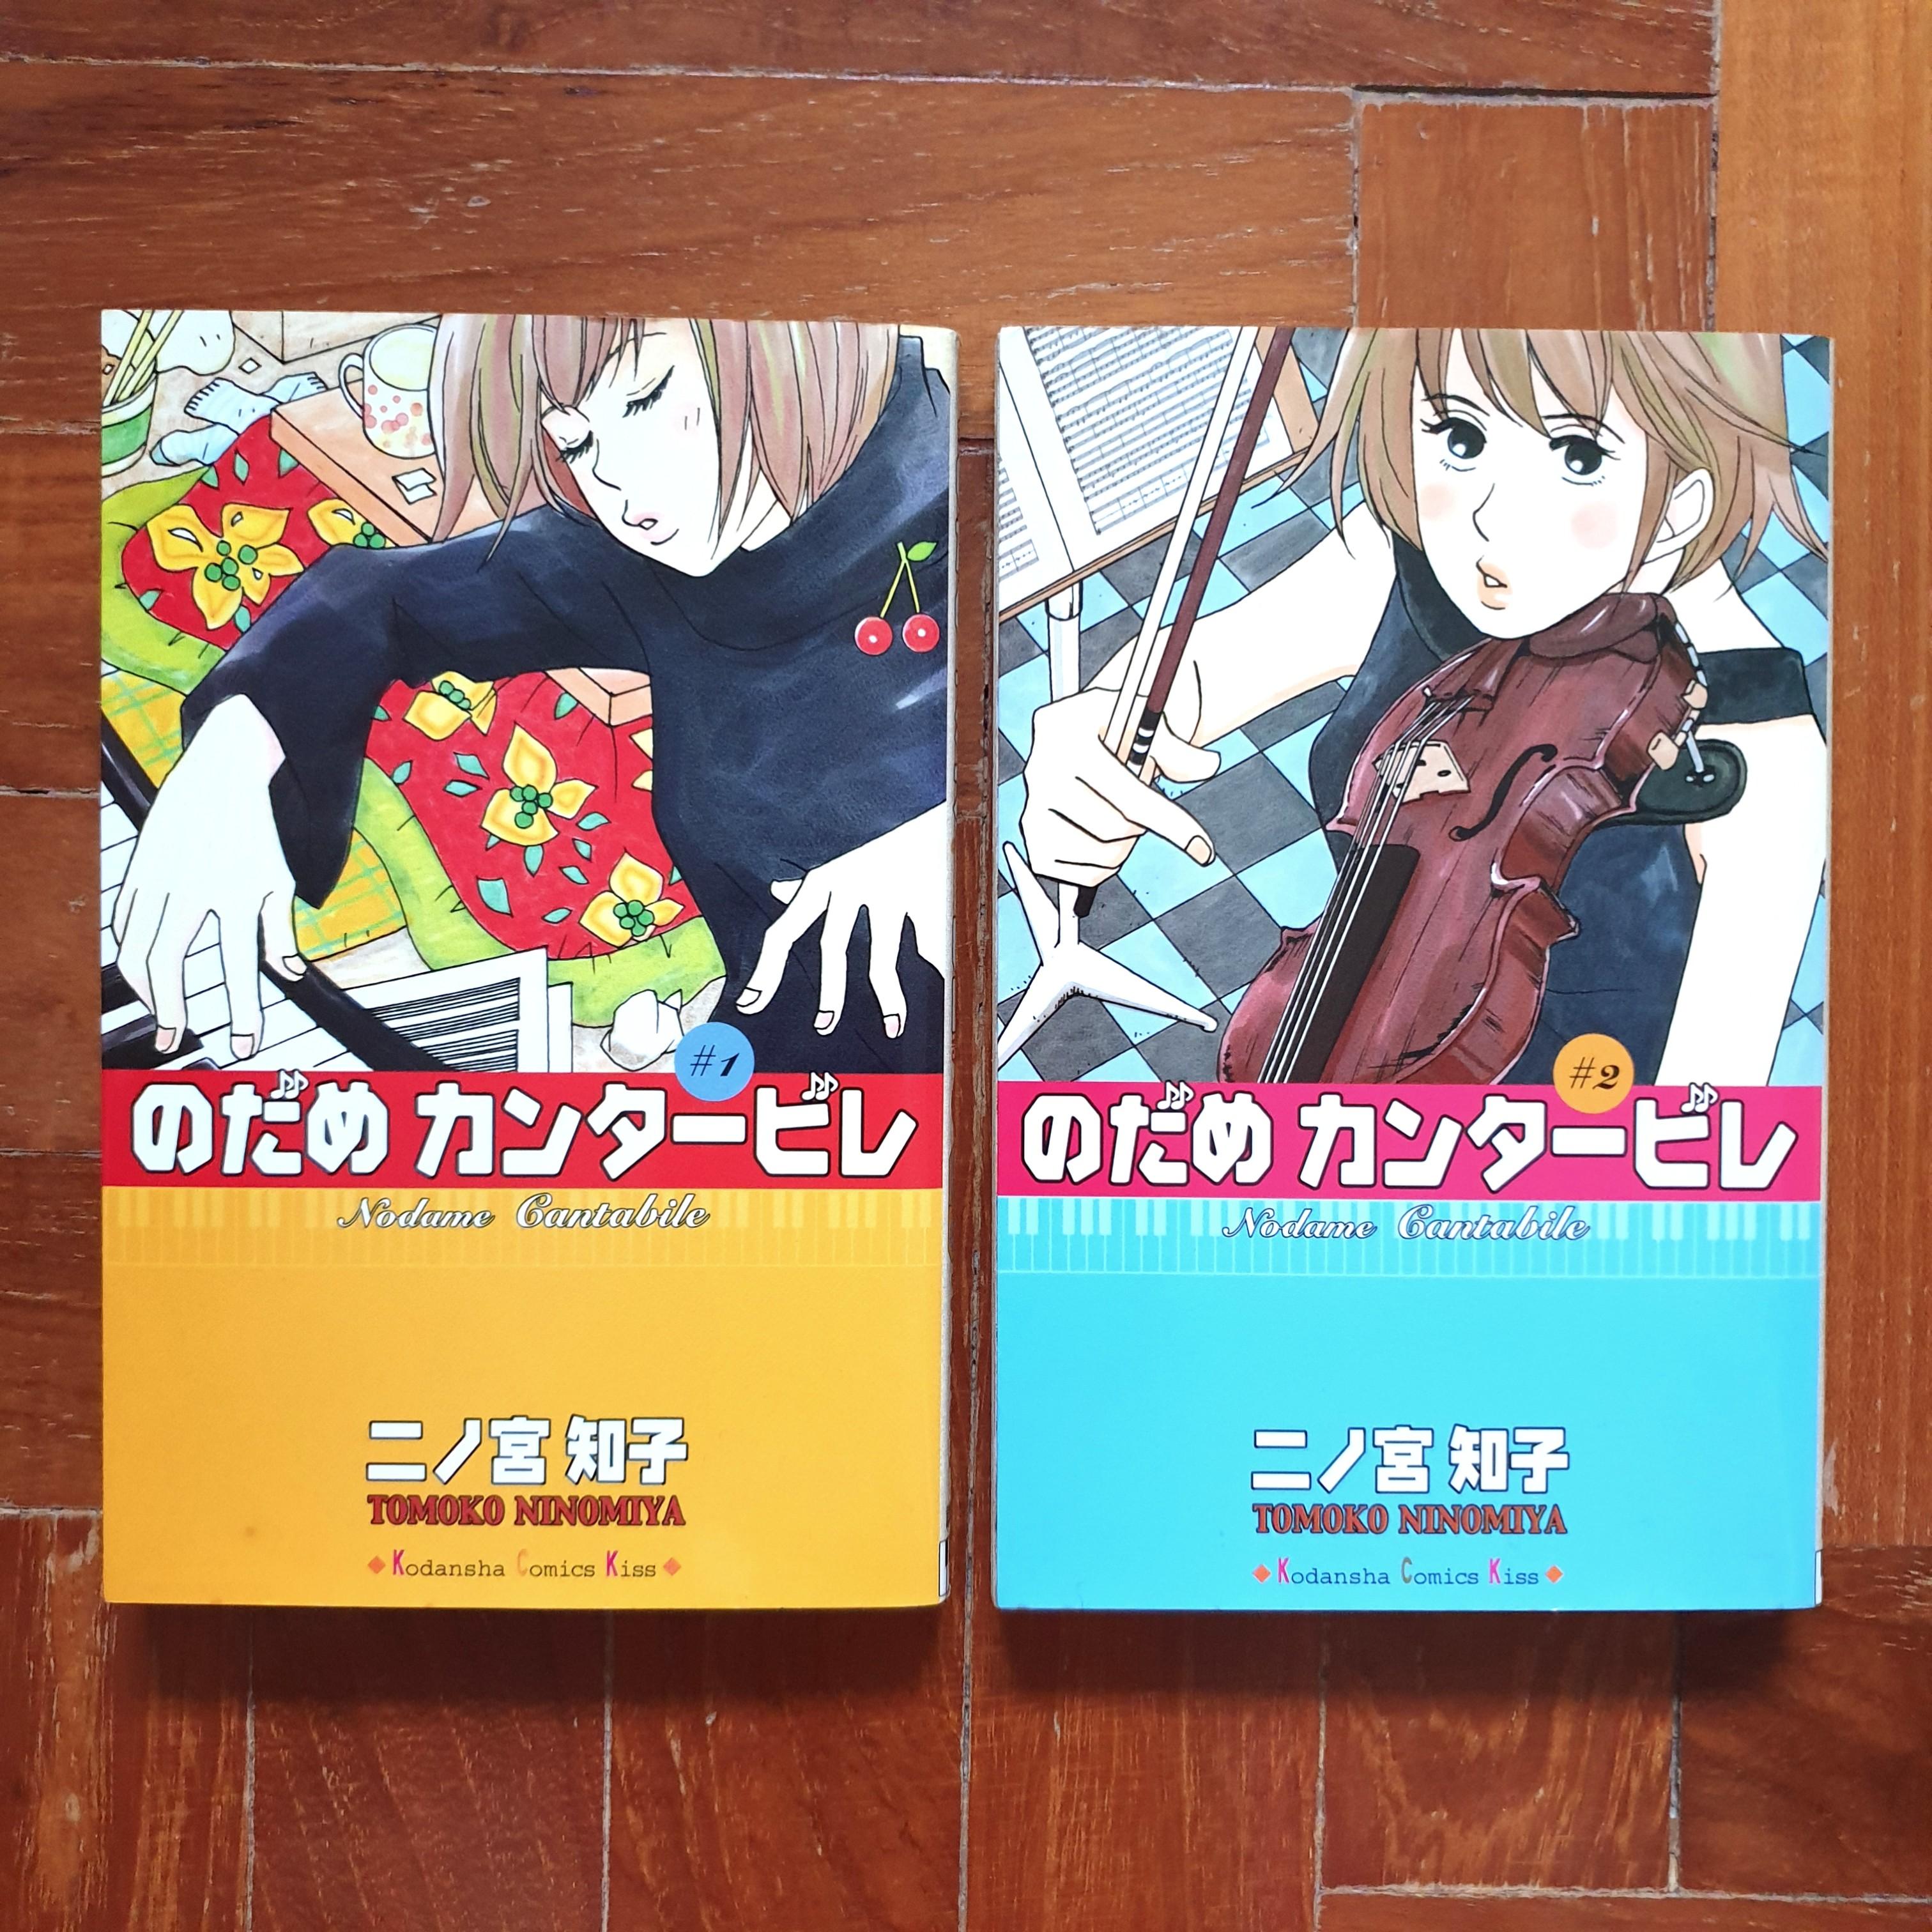 のだめカンタービレ Nodame Cantabile 1 2 Japanese Manga By 二ノ宮知子 Books Stationery Comics Manga On Carousell